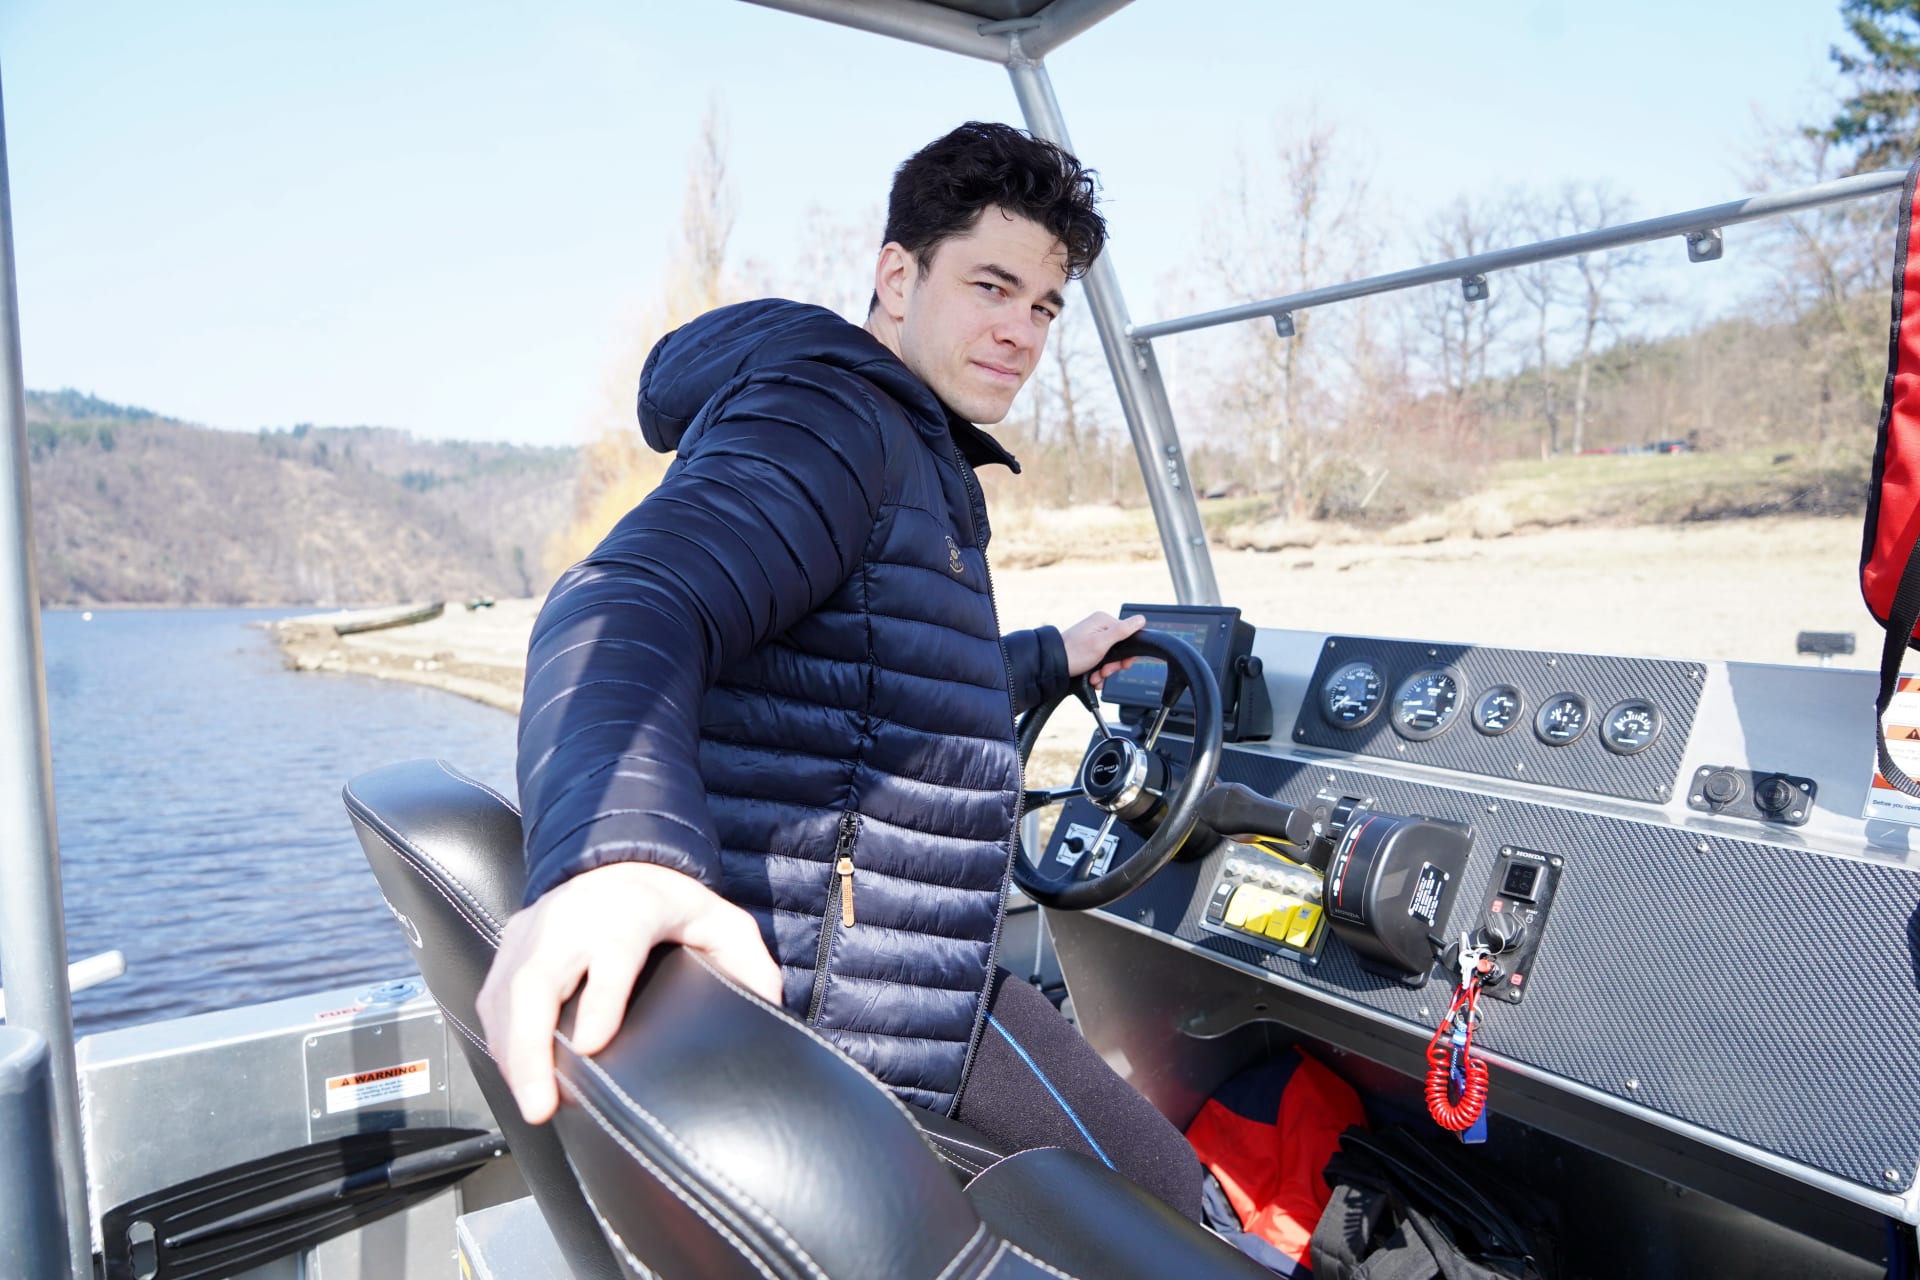 Marek Adamczyk při tréninku řízení lodi.